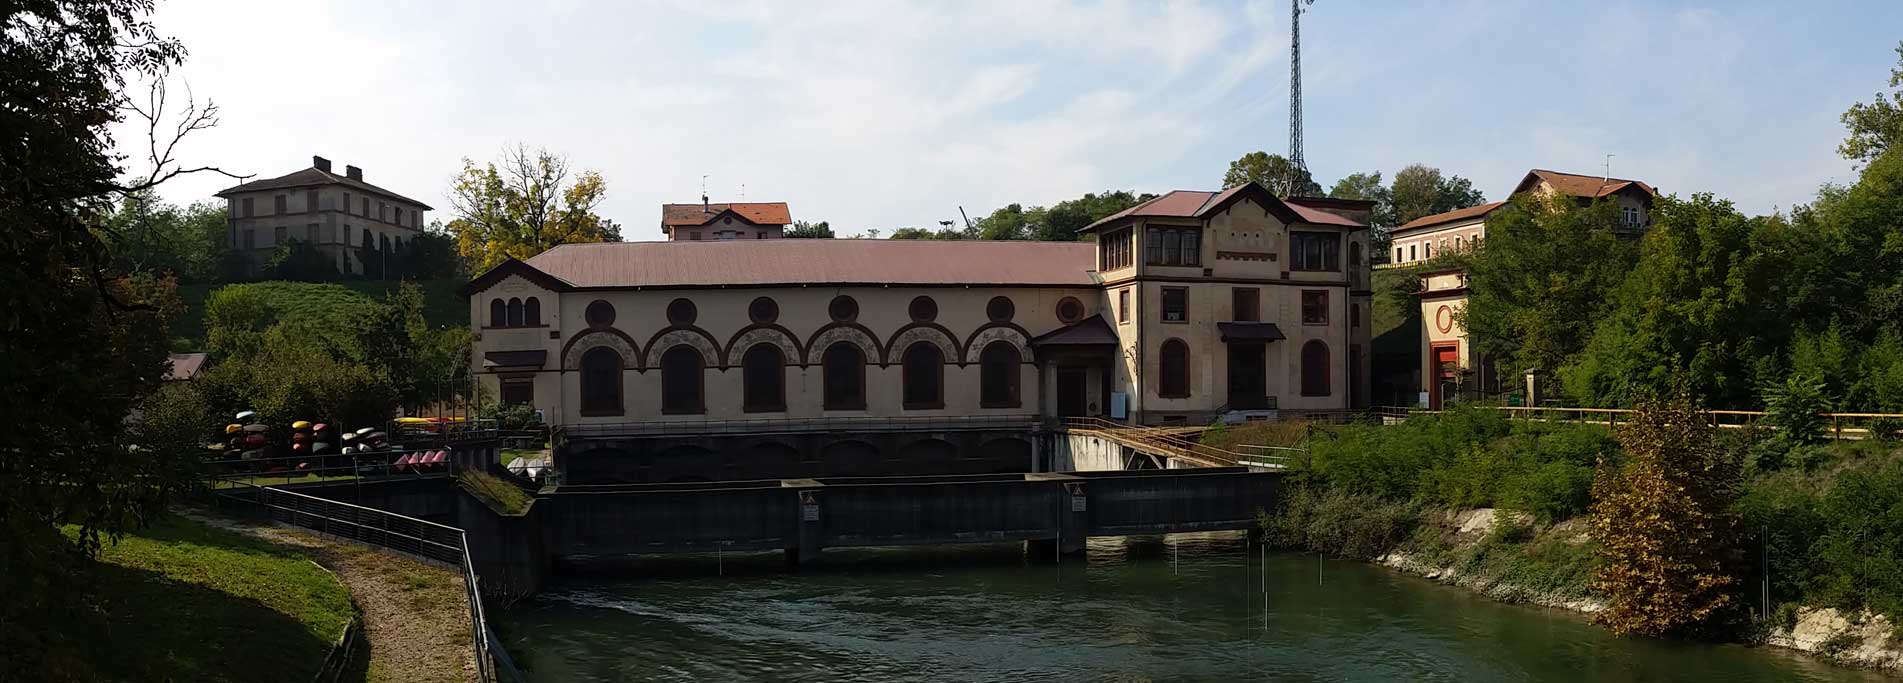 La centrale idroelettrica Ludovico il Moro di Vigevano